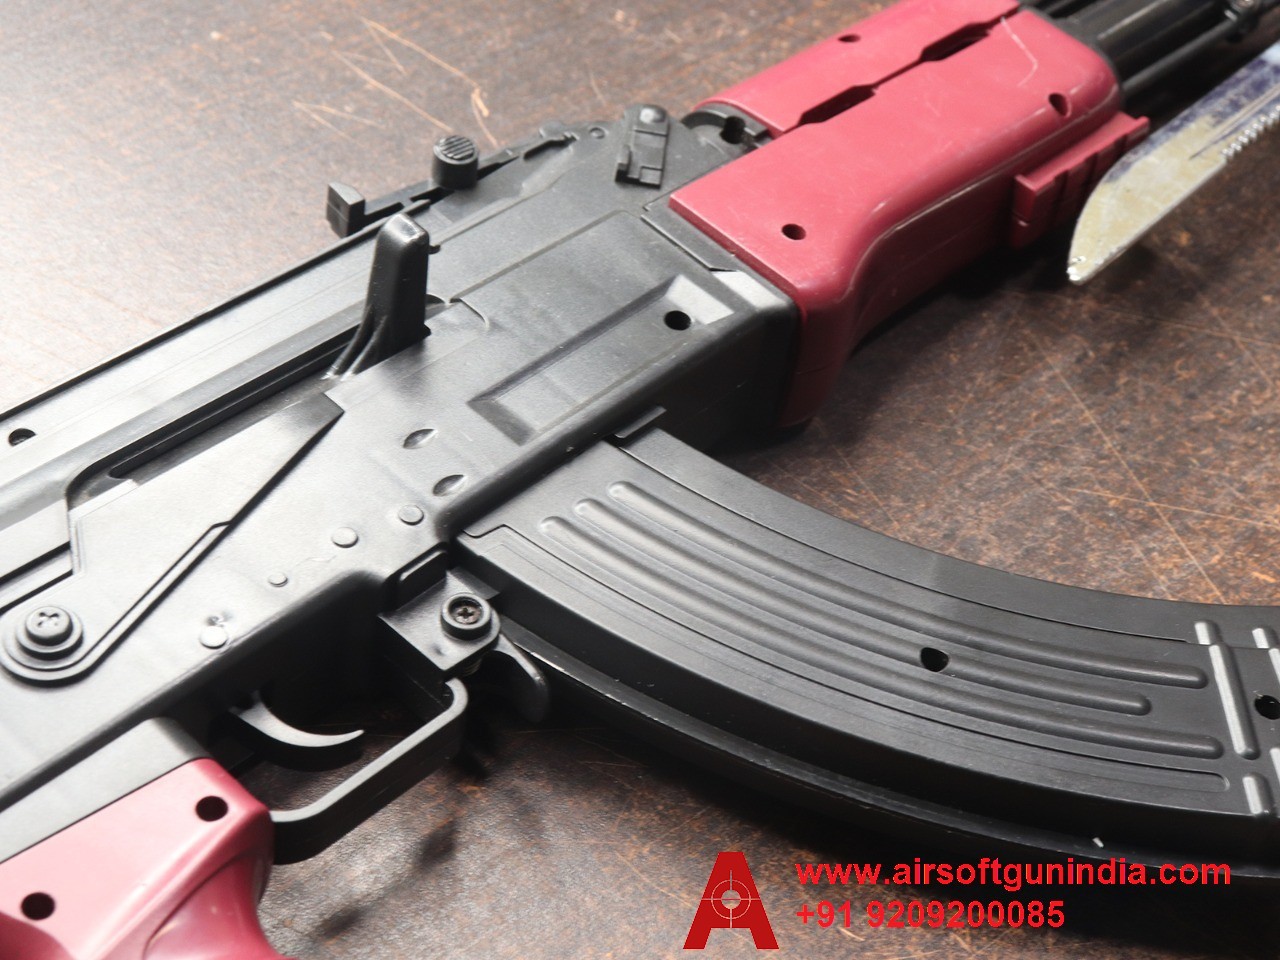 AK 47 PUBG Airsoft Toy Rifle By Airsoft Gun India